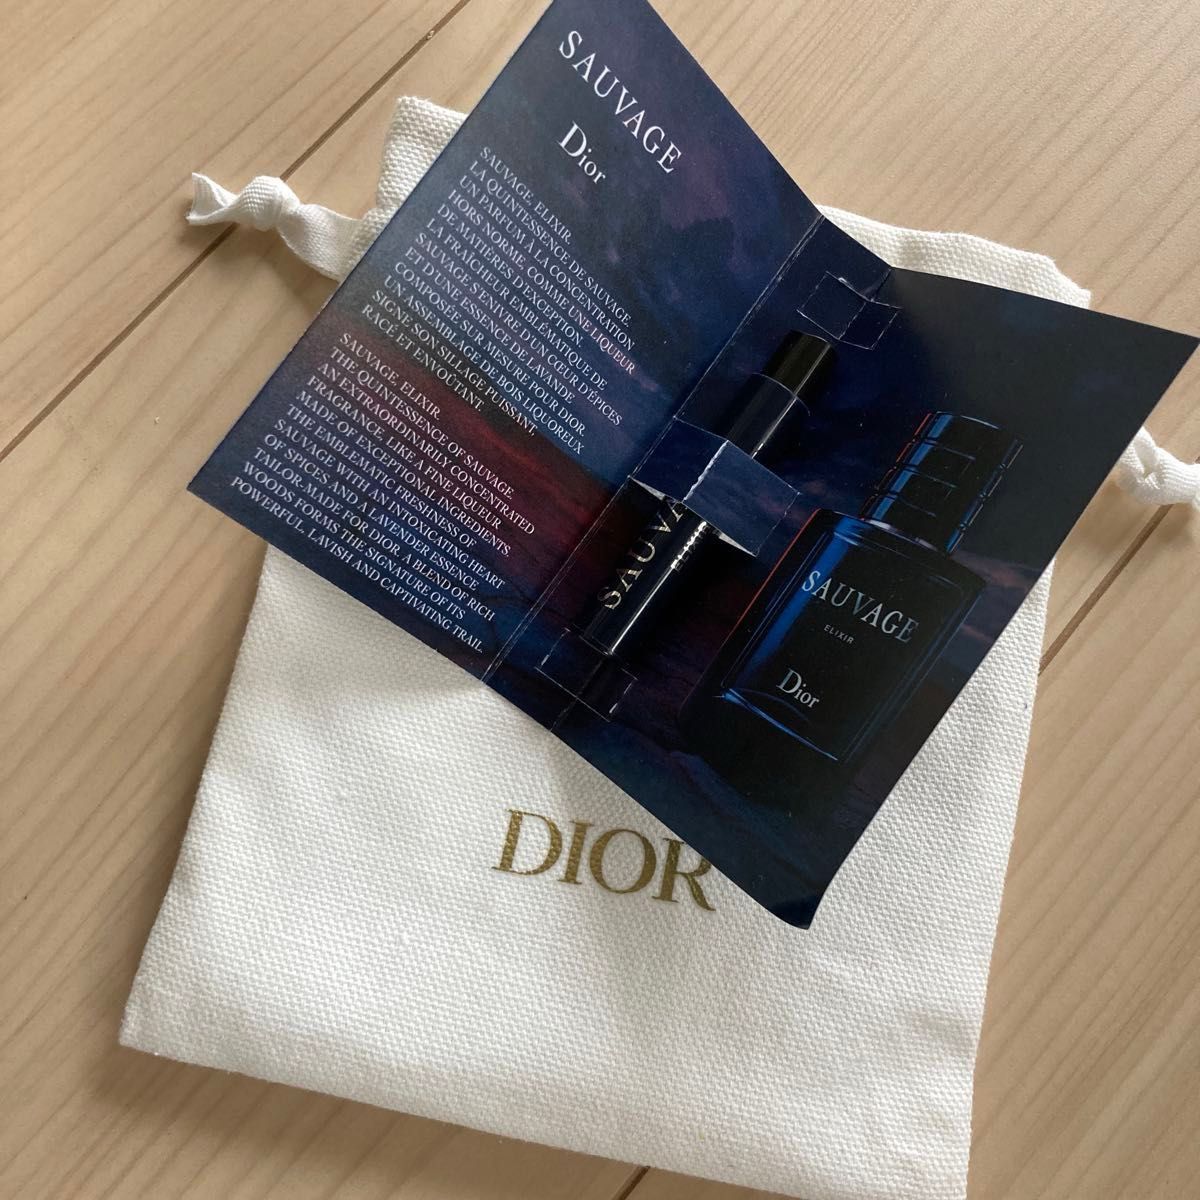 【新品★未使用】 Dior ソヴァージュ エリクシール 1ml ミニサイズ